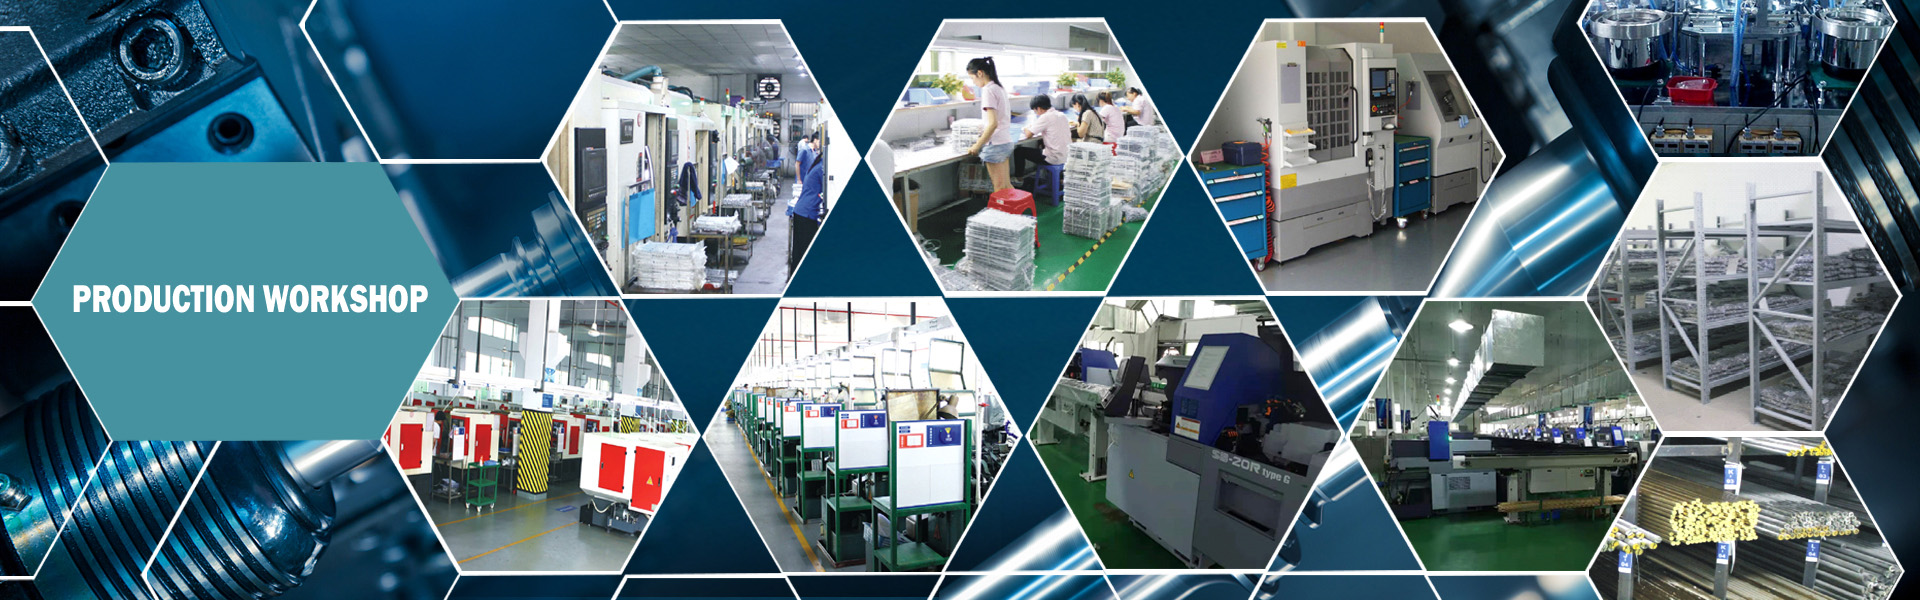 精密ハードウェア，合金ダイカスト，プロファイル成形,Dongguan Xililai Precision Hardware Co.,Ltd.